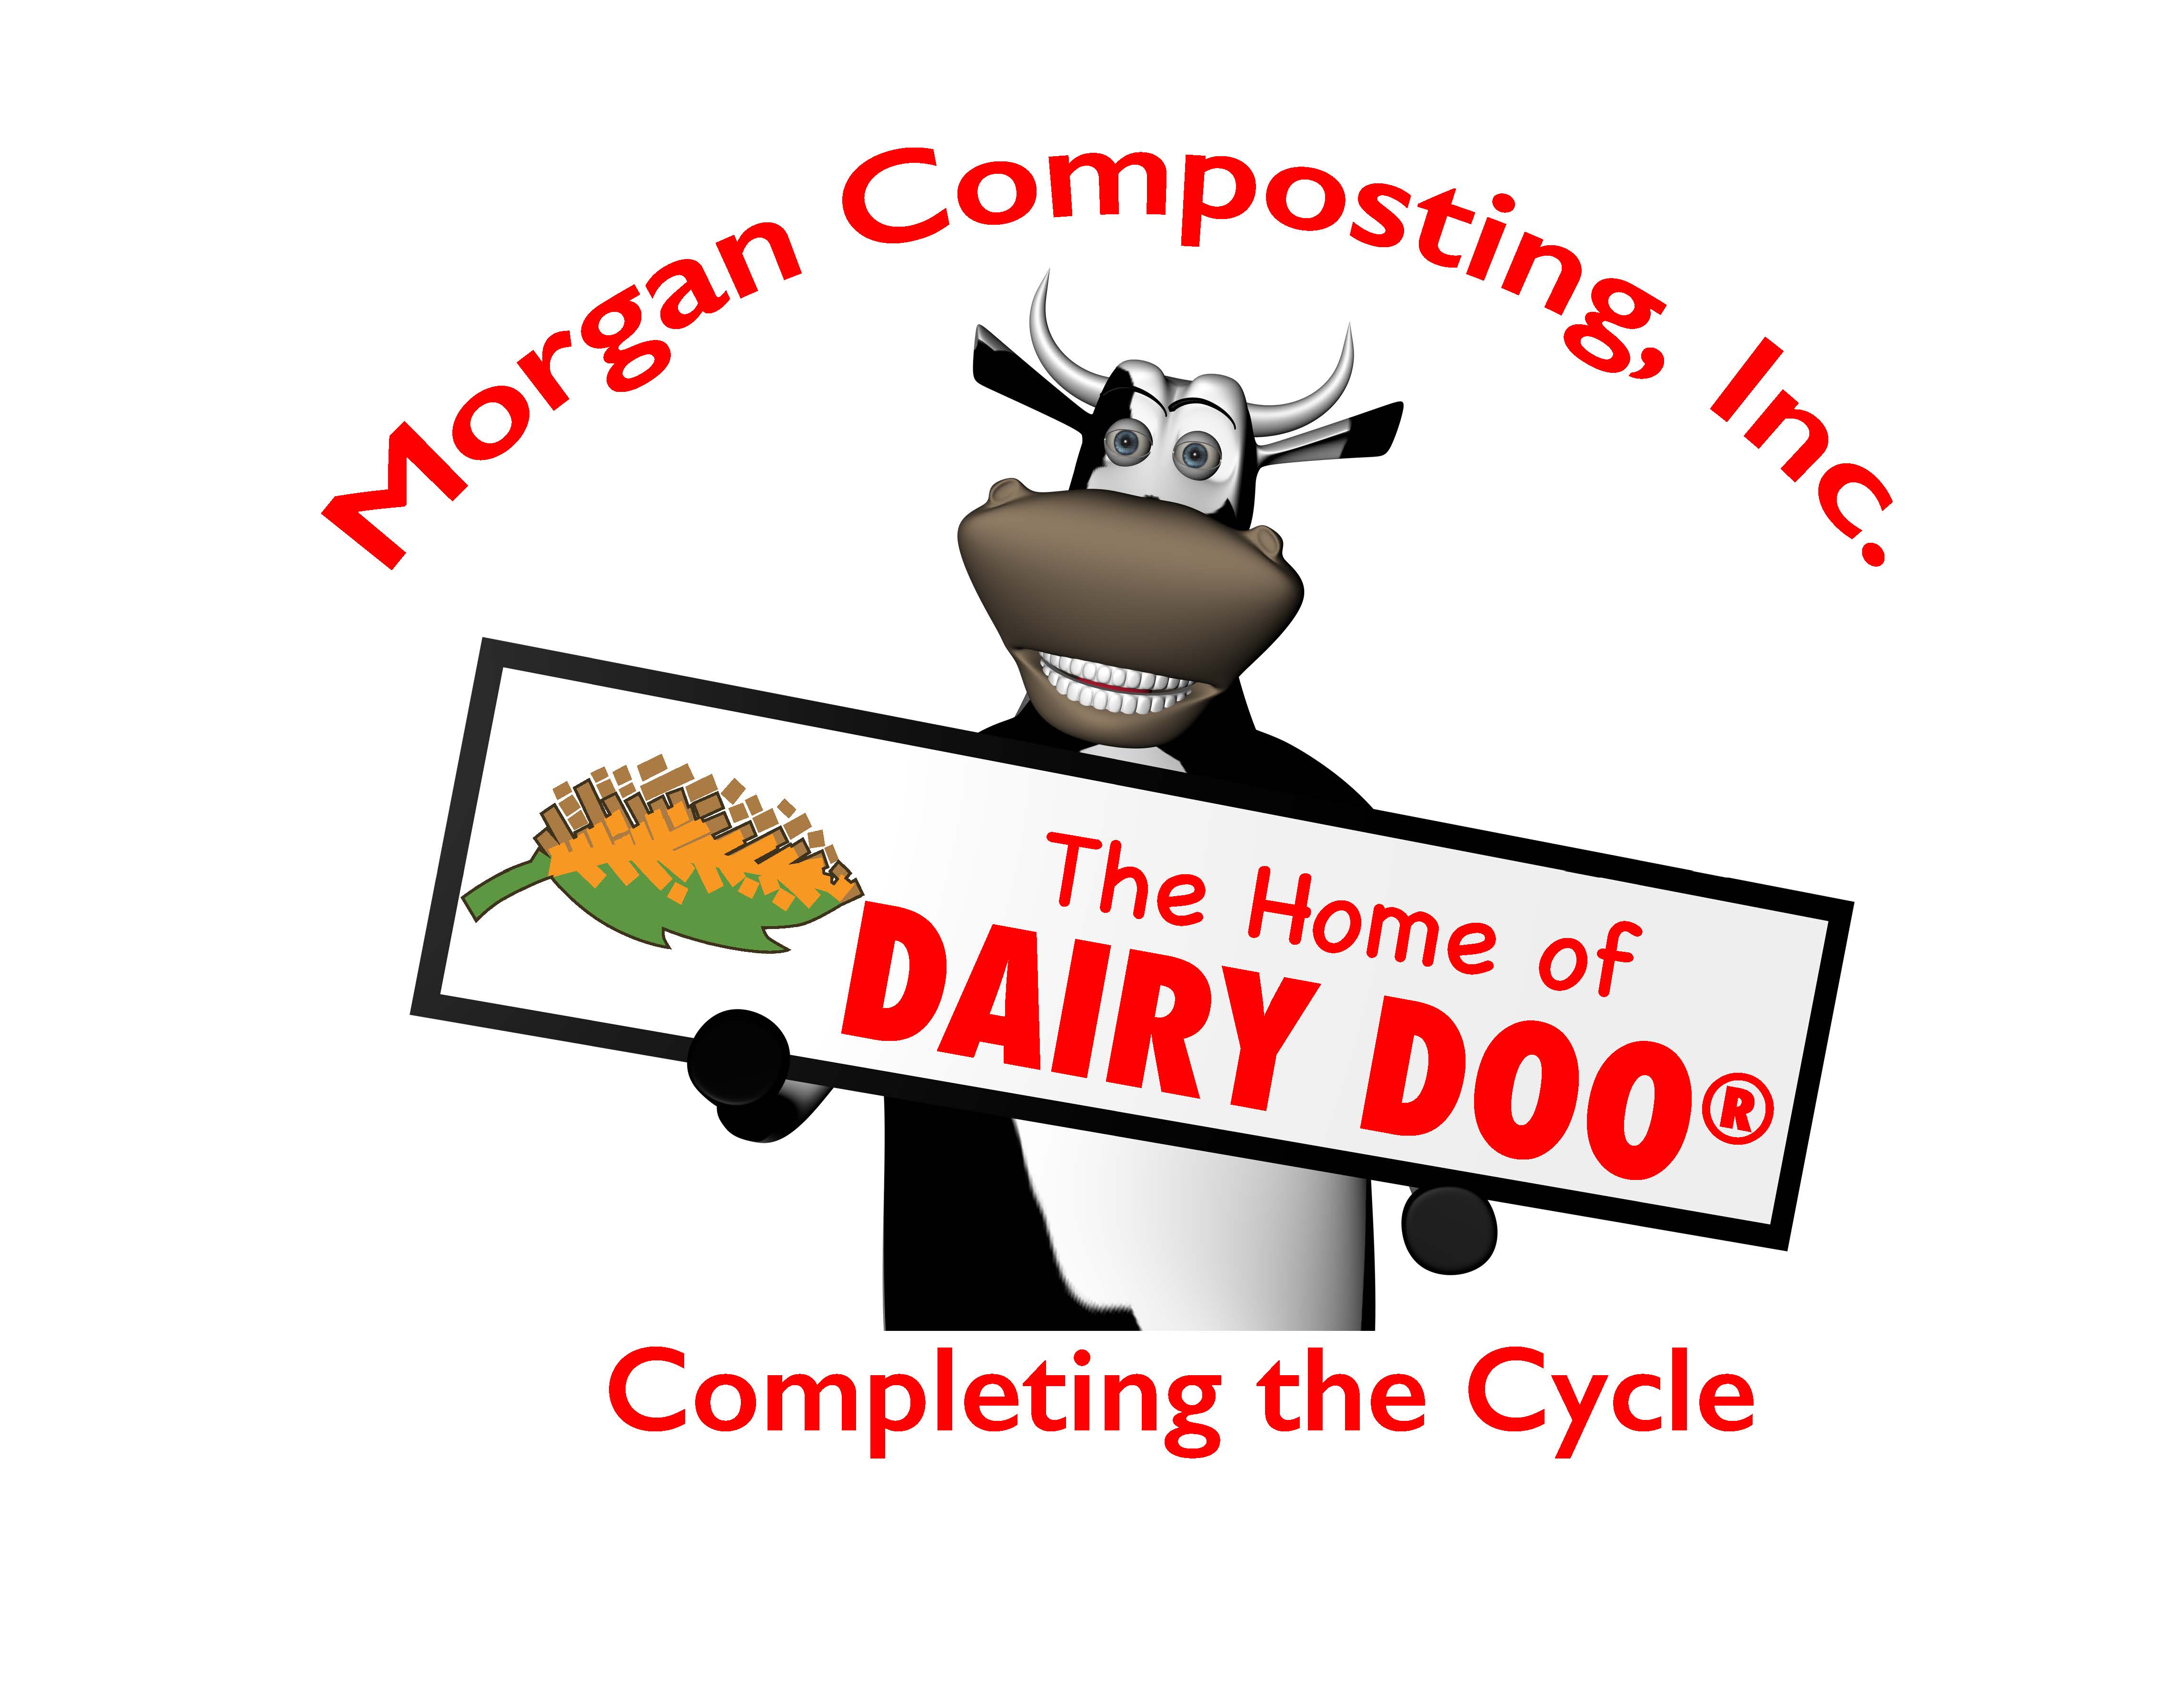 Morgan Composting.jpg